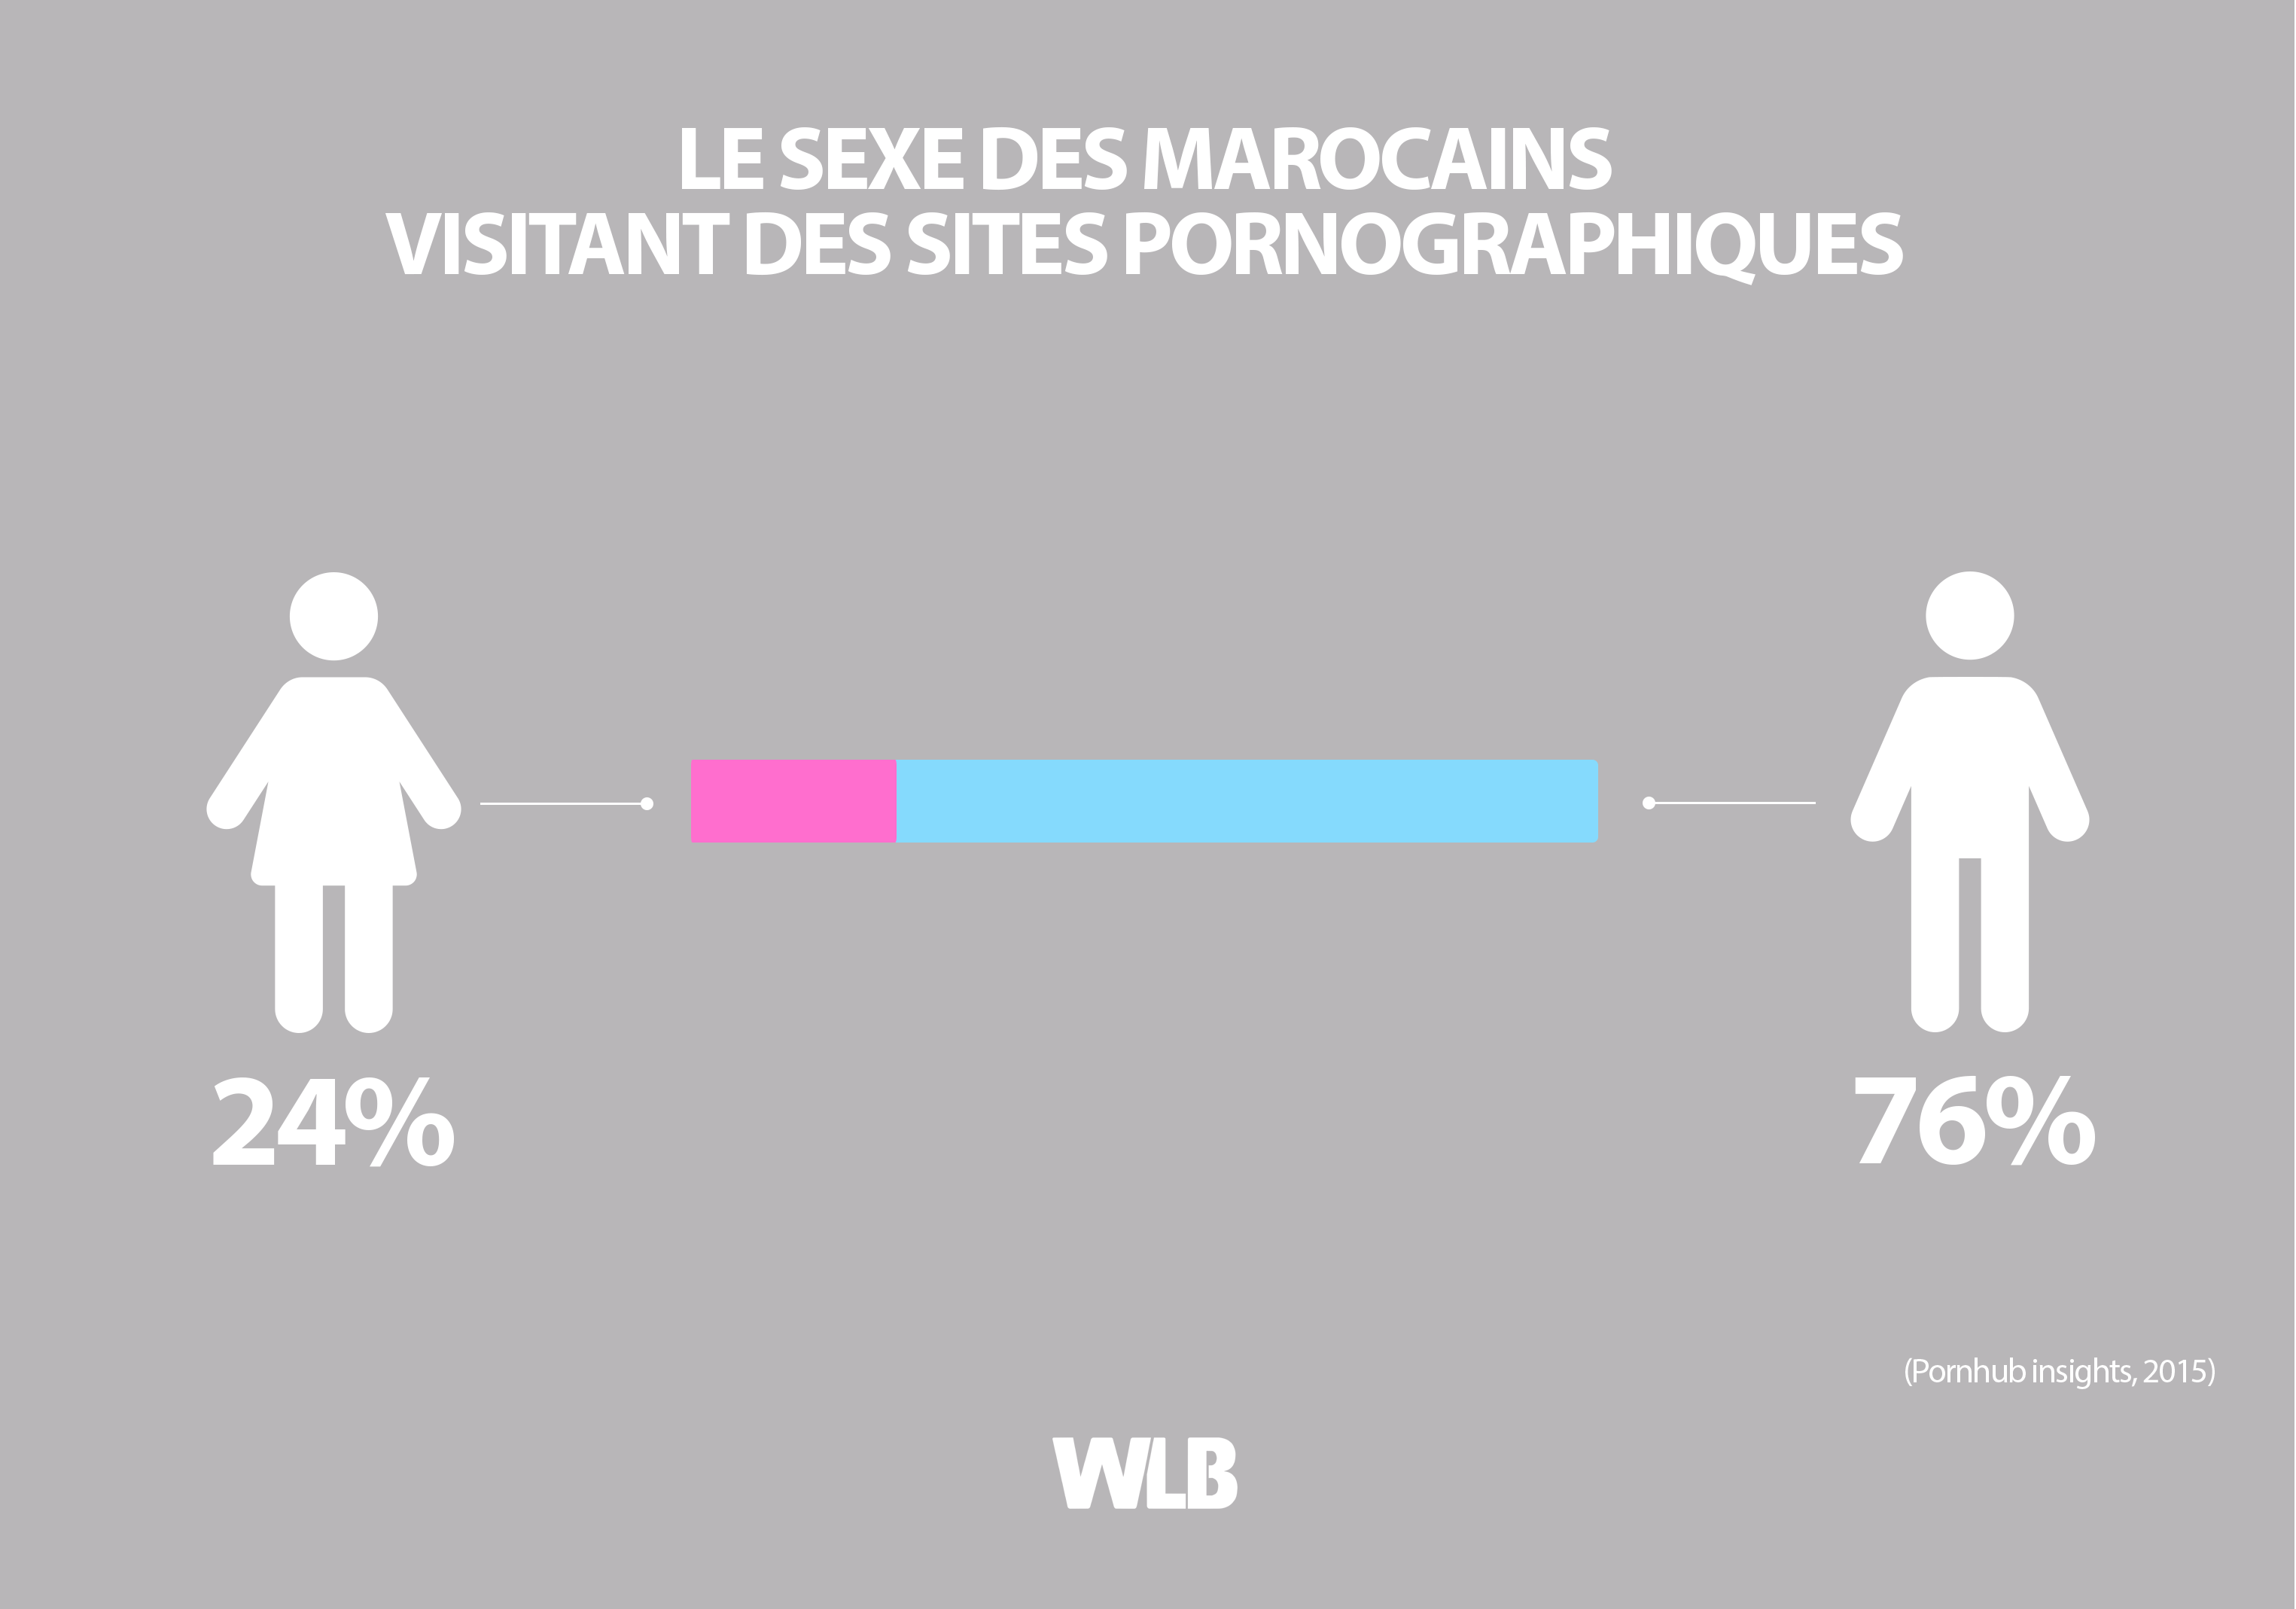 Le sexe des Marocains visitant des sites pornographiques